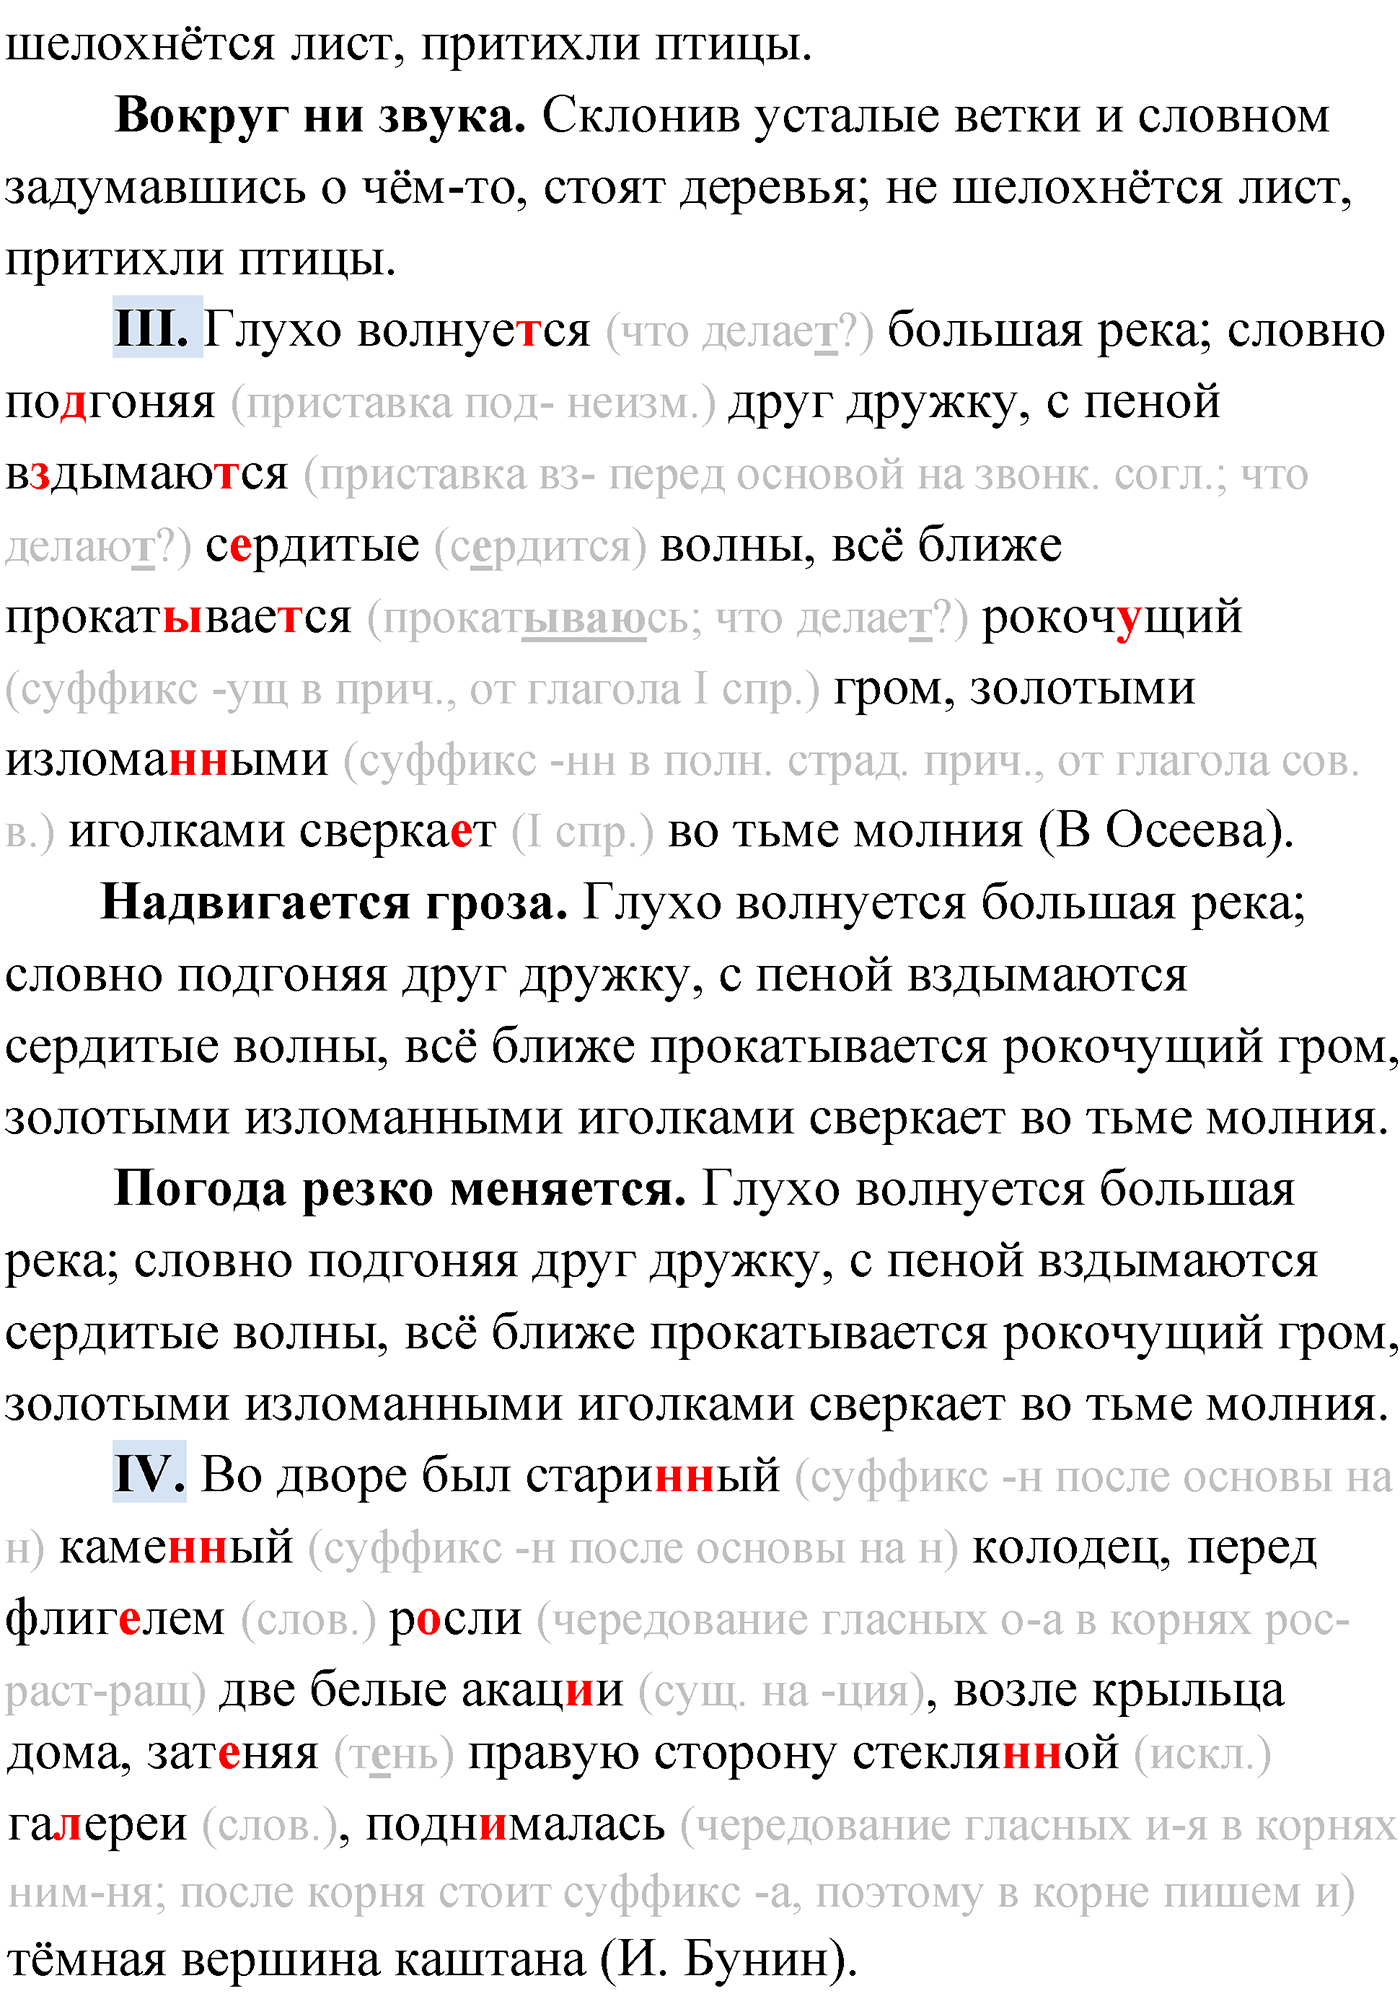 упражнение №275 русский язык 9 класс Мурина 2019 год